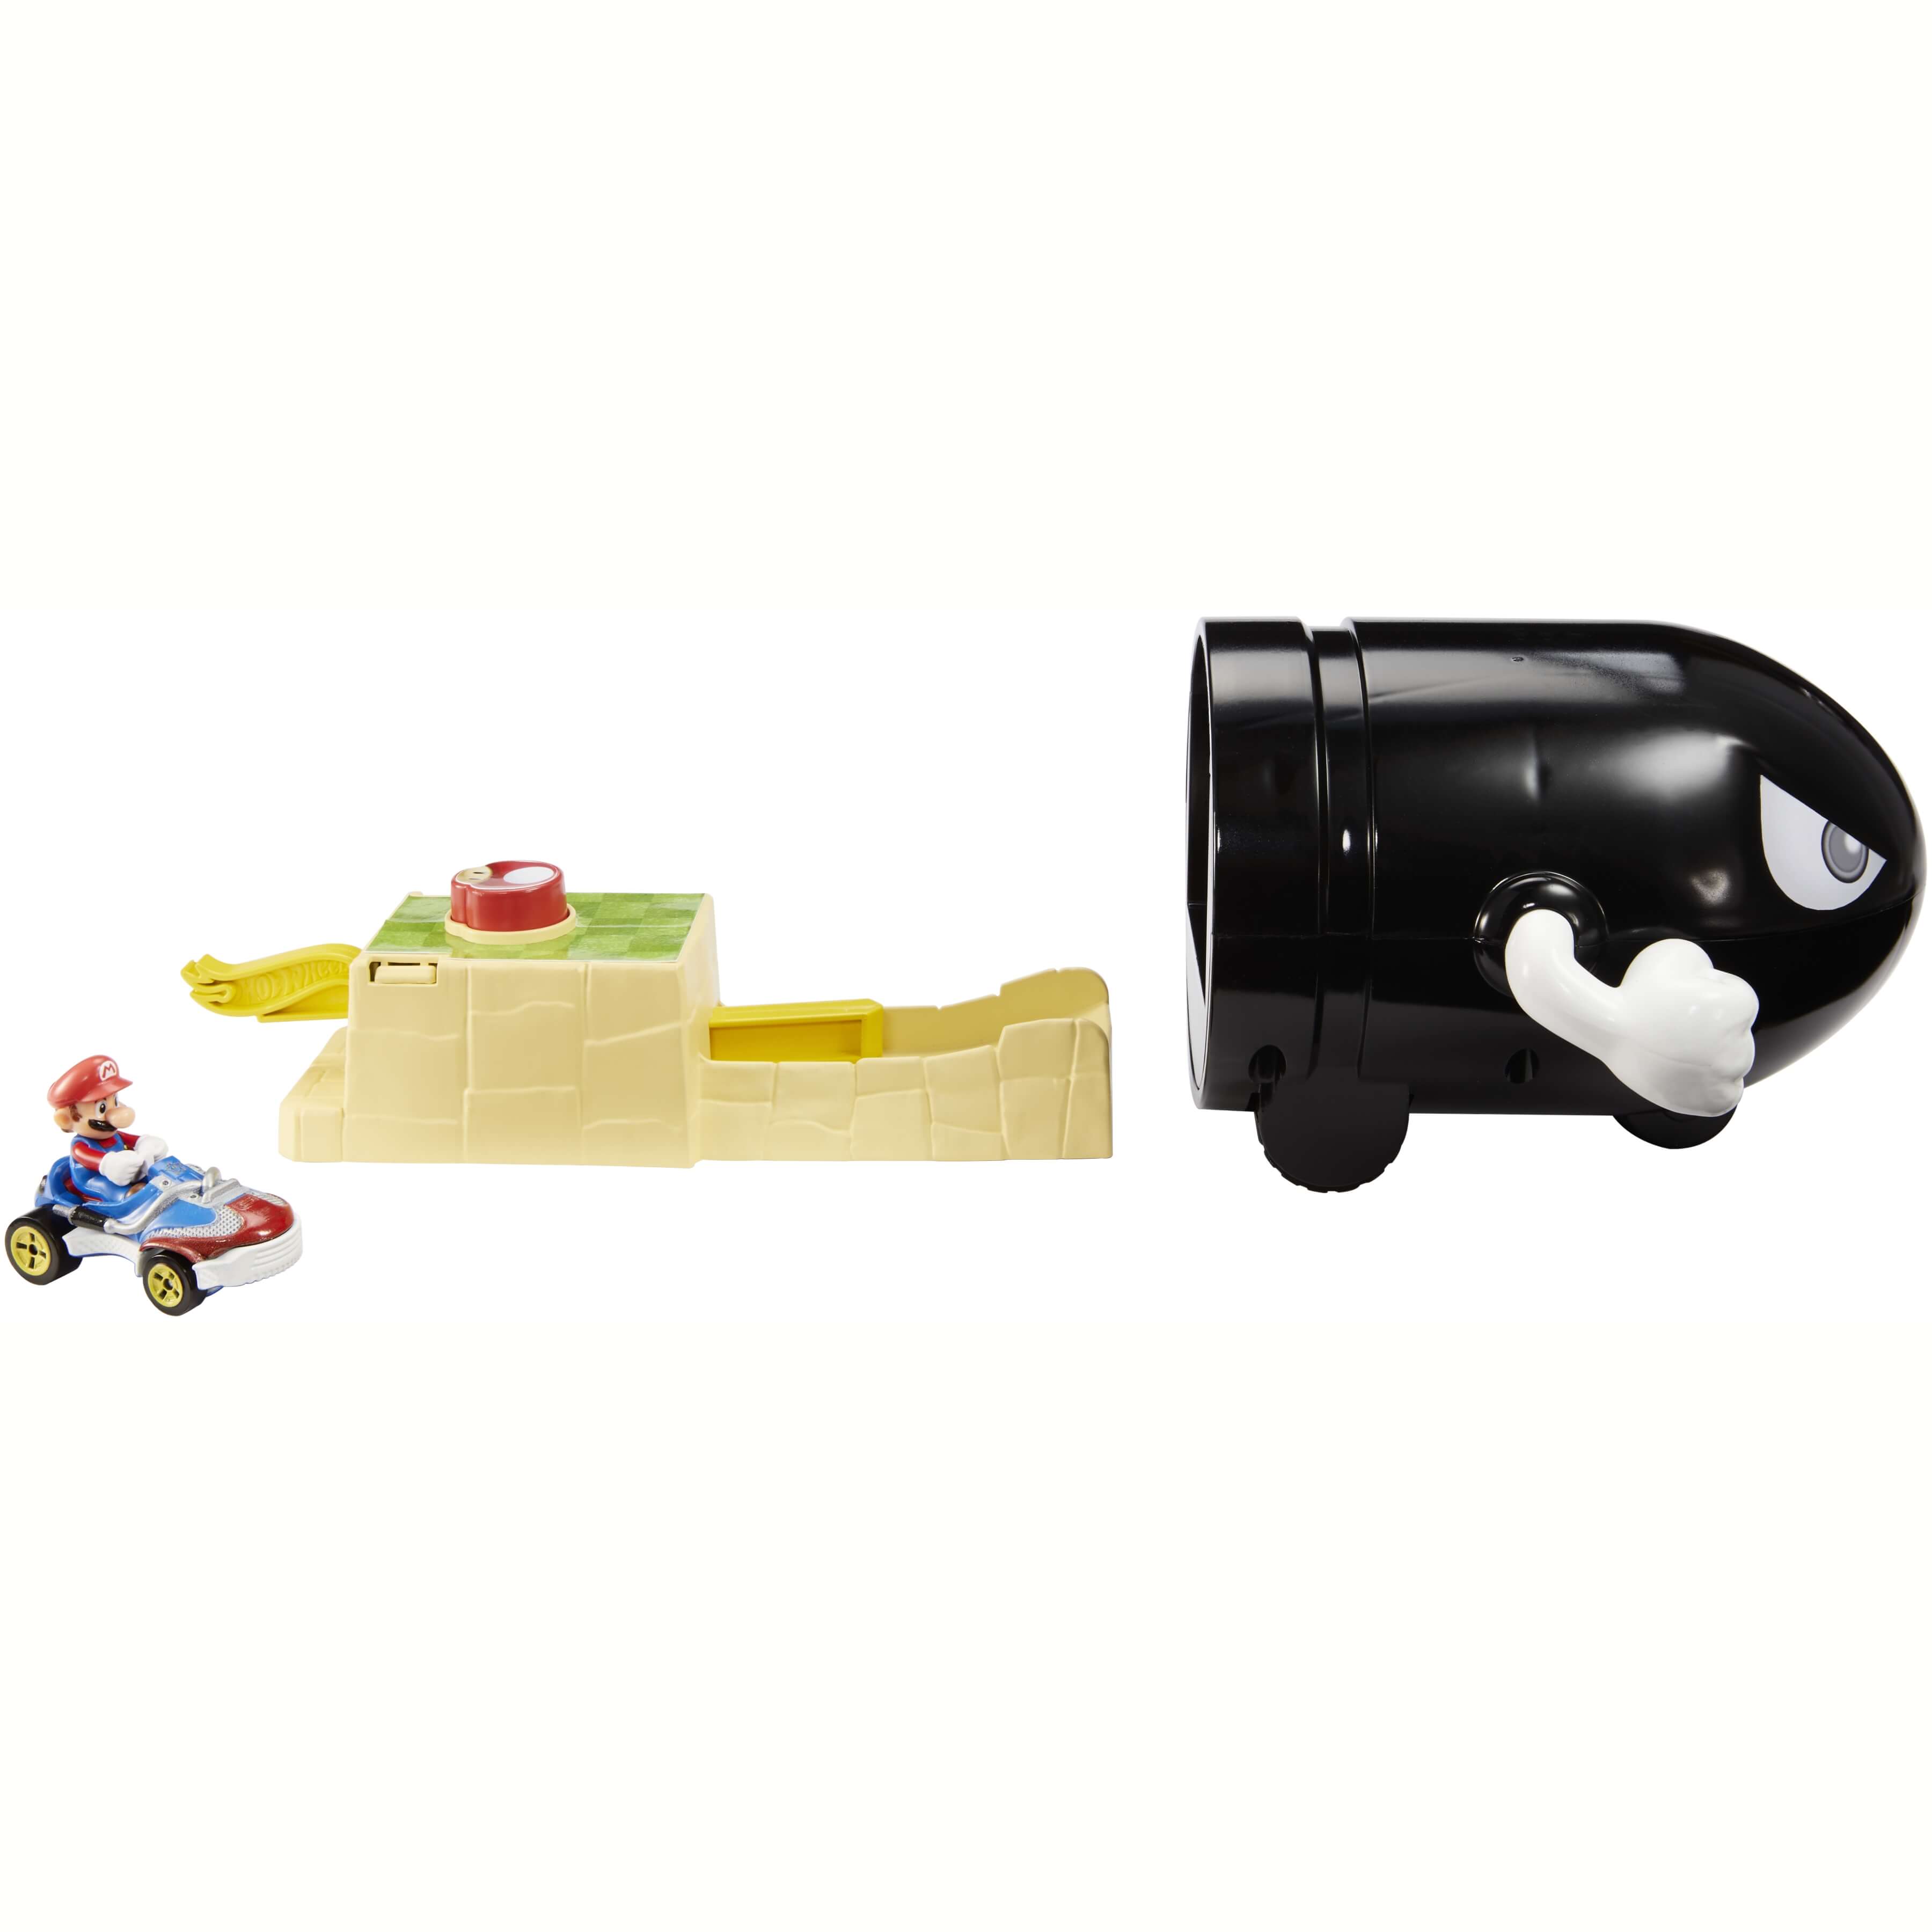 マリオカート-ホットウィール-Hot-wheels-Mario-Kart-瑪利歐賽車系列-風火輪小汽車9